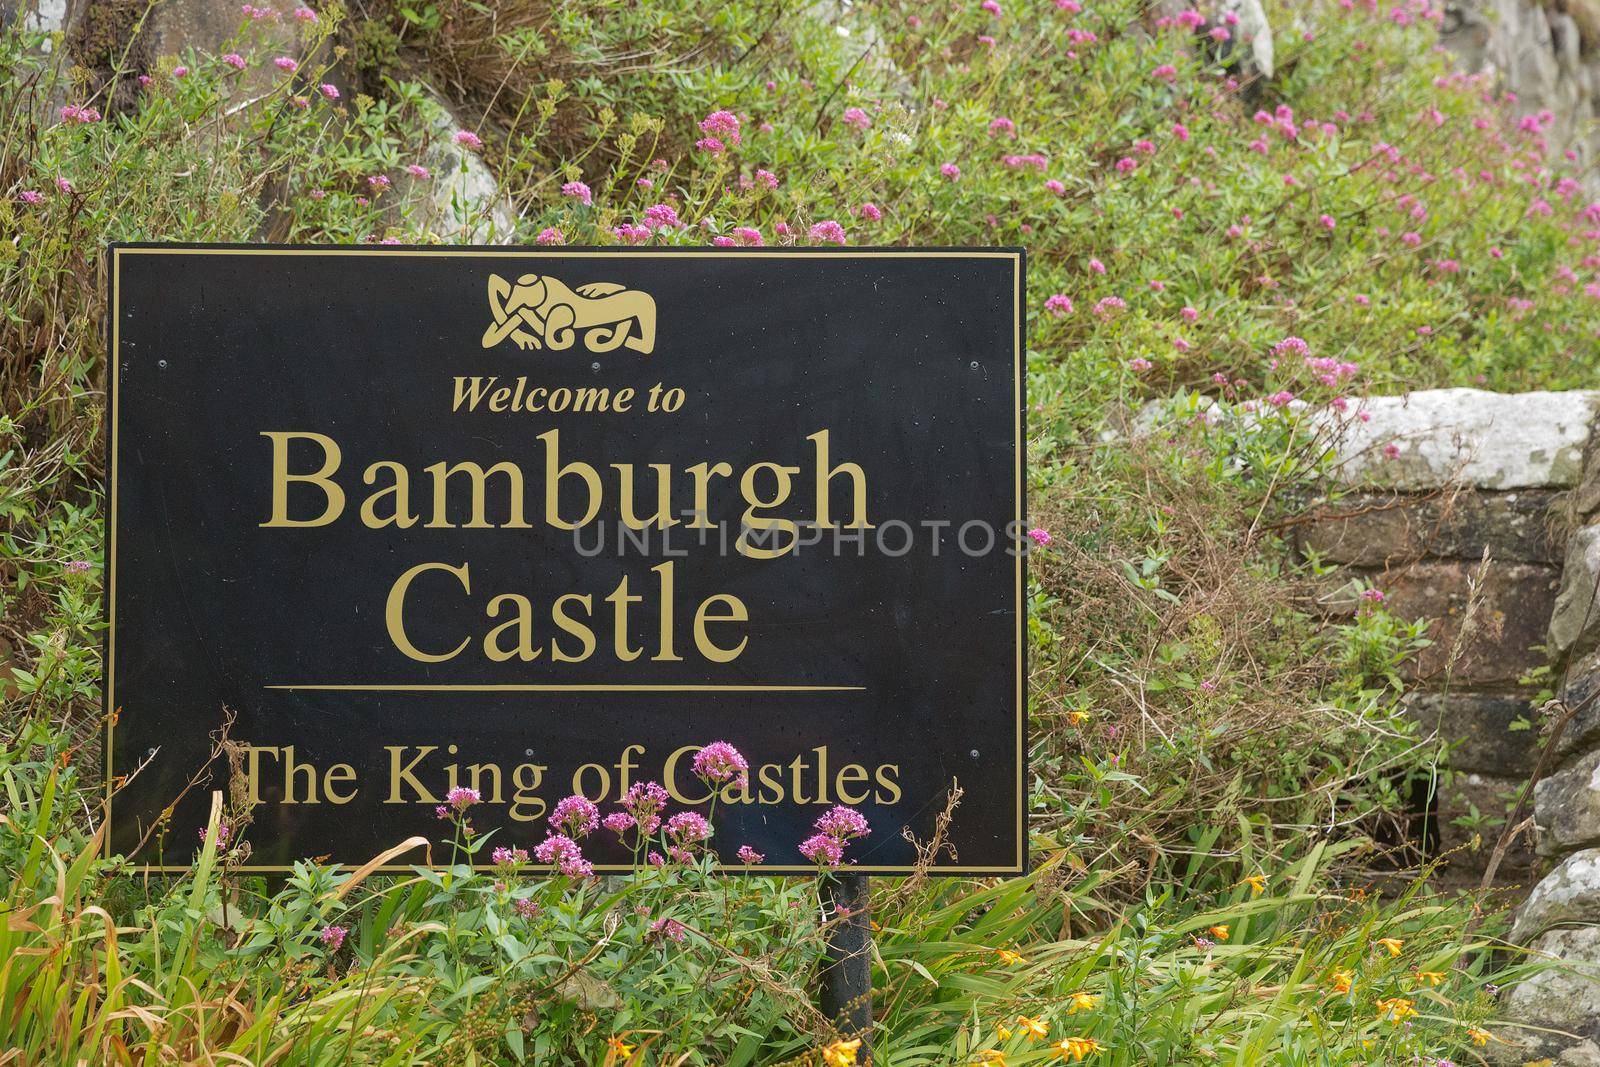 BAMBURGH, NORTHUMBERLAND, ENGLAND, UK - SEPTEMBER 10, 2017: Welcome sign of Bamburgh Castle in Northumberland, England, UK.